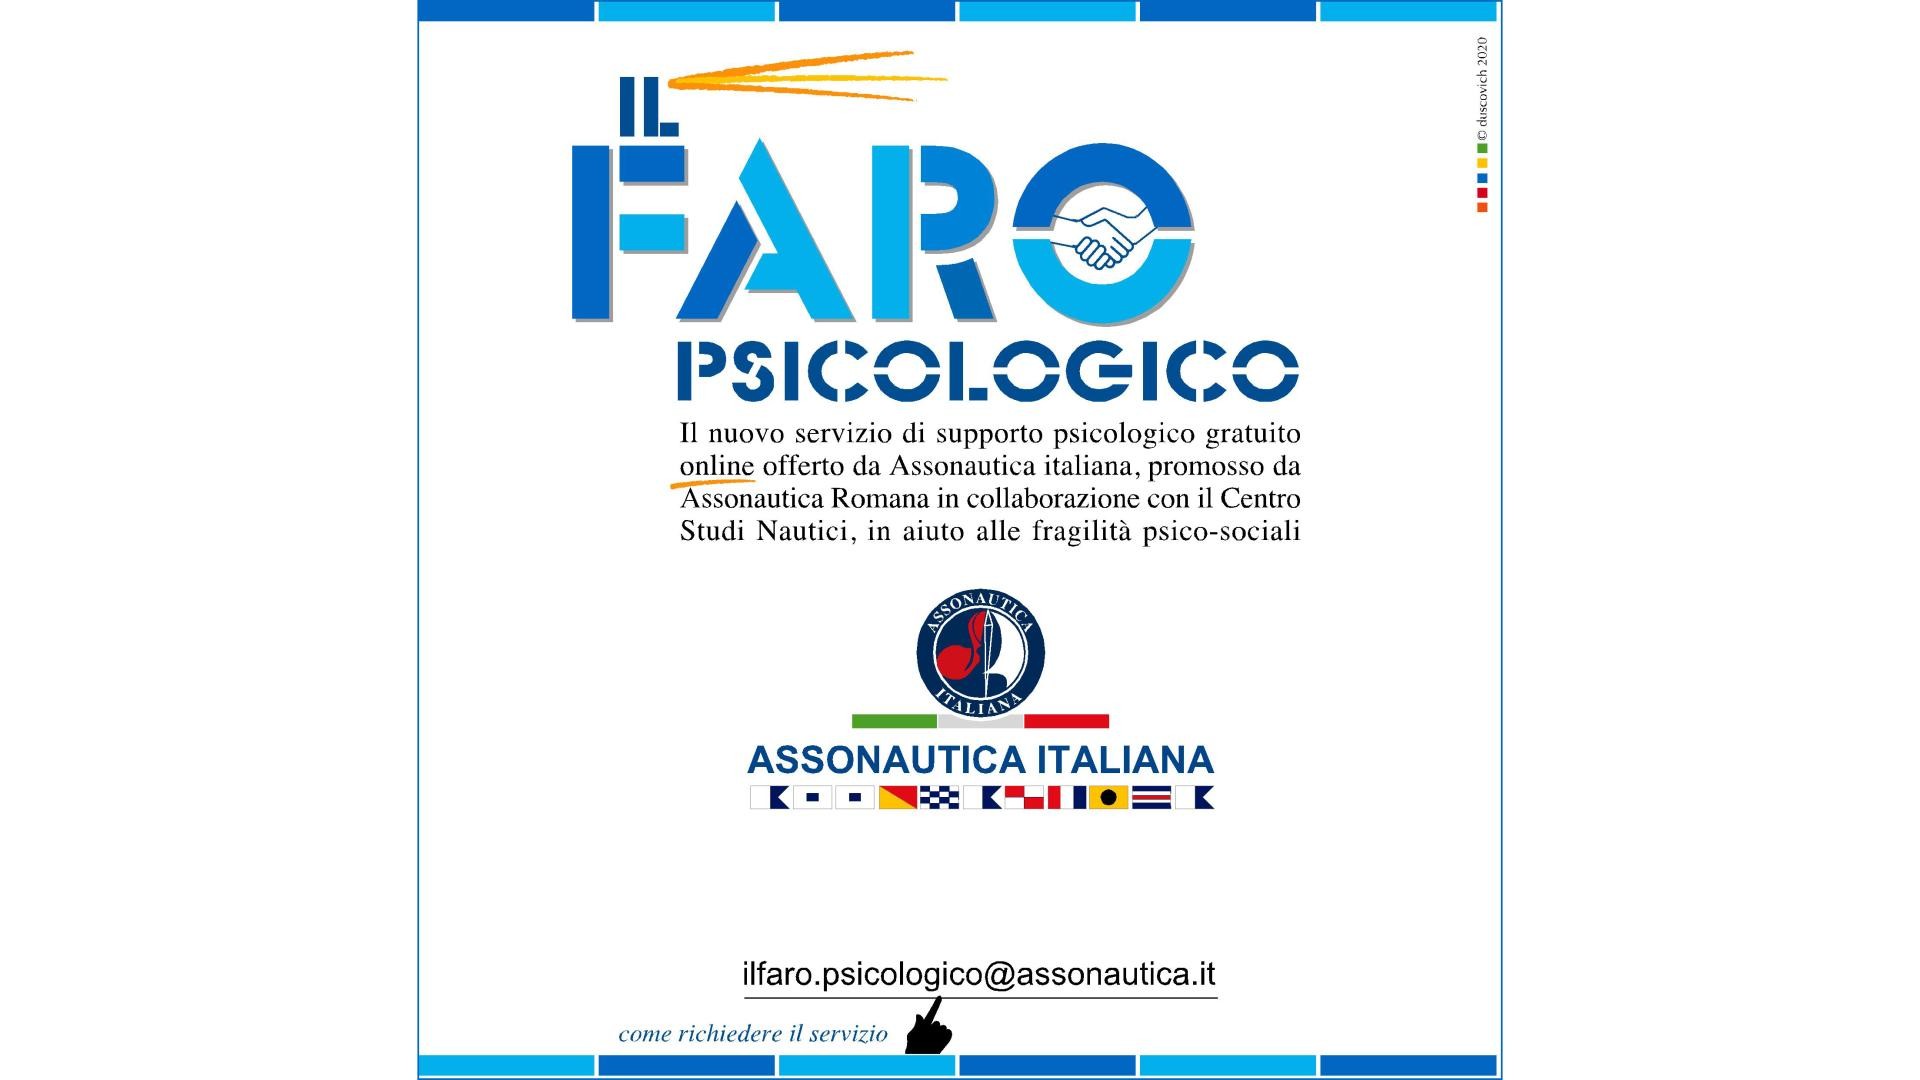 Il Faro, servizio di supporto psicologico gratuito a distanza di Assonautica Italiana